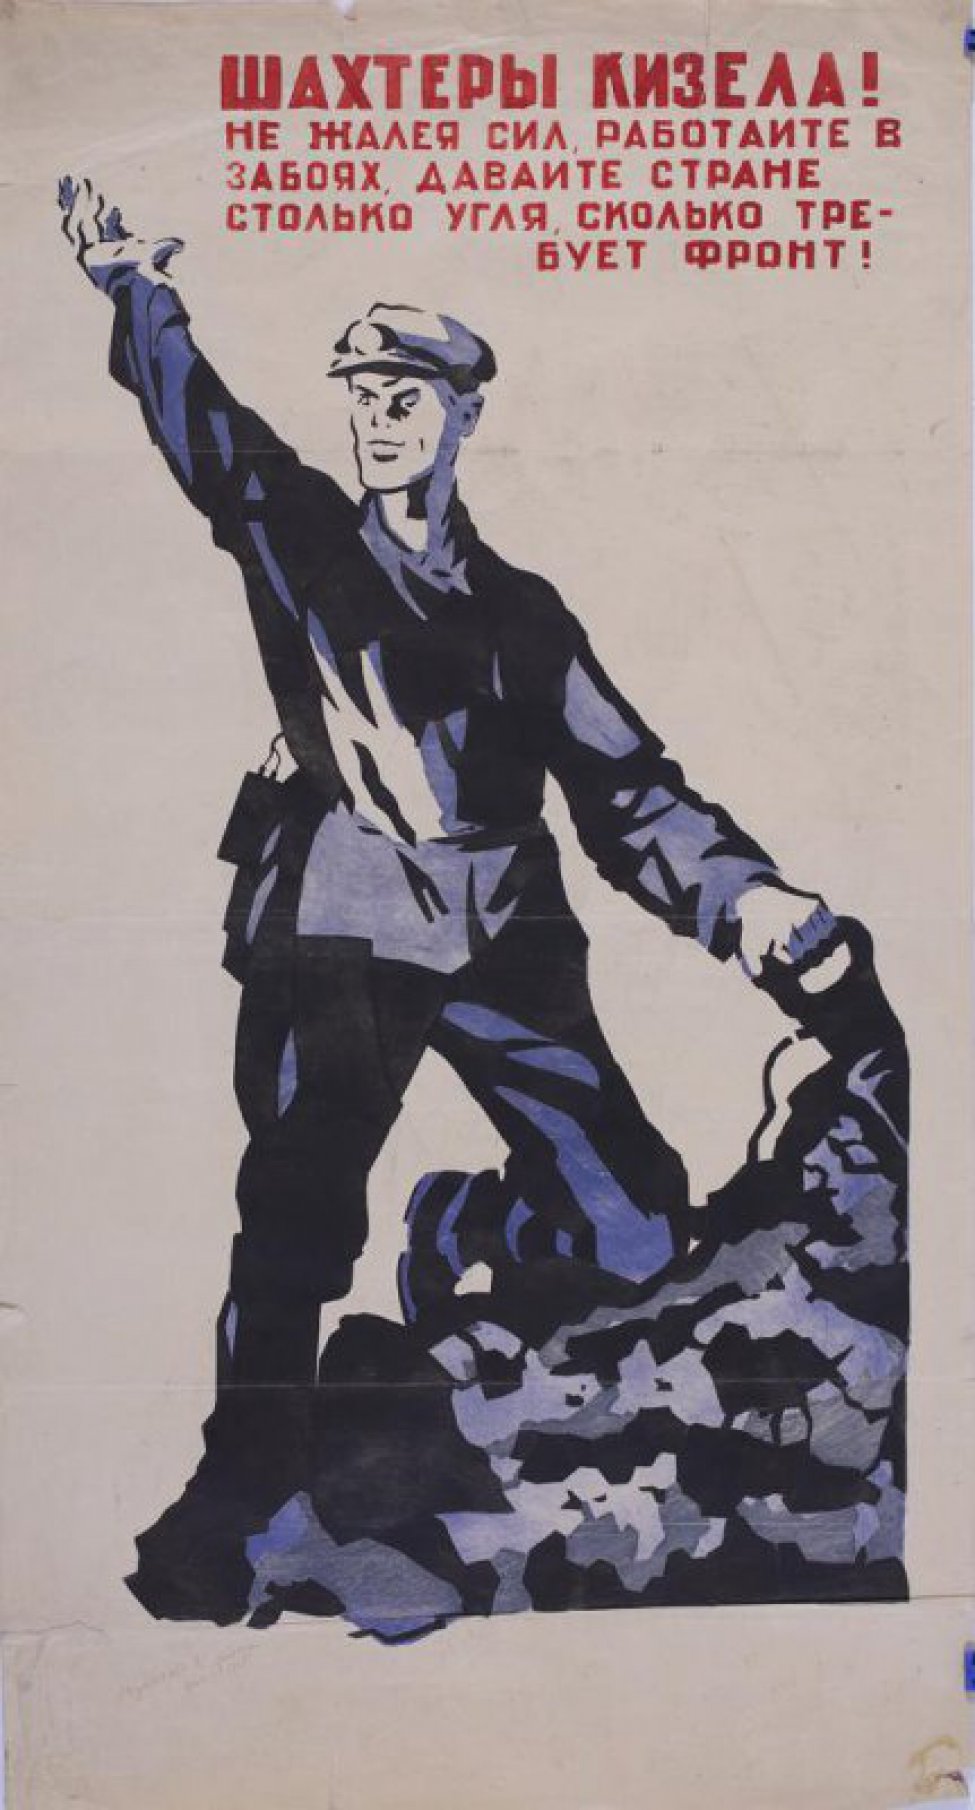 Изображен шахтер, стоящий в забое. Правая рука его поднята вверх, левая со сверлом вонзилась в груду угля. Вверху текст:" Шахтеры... фронт".1943г.